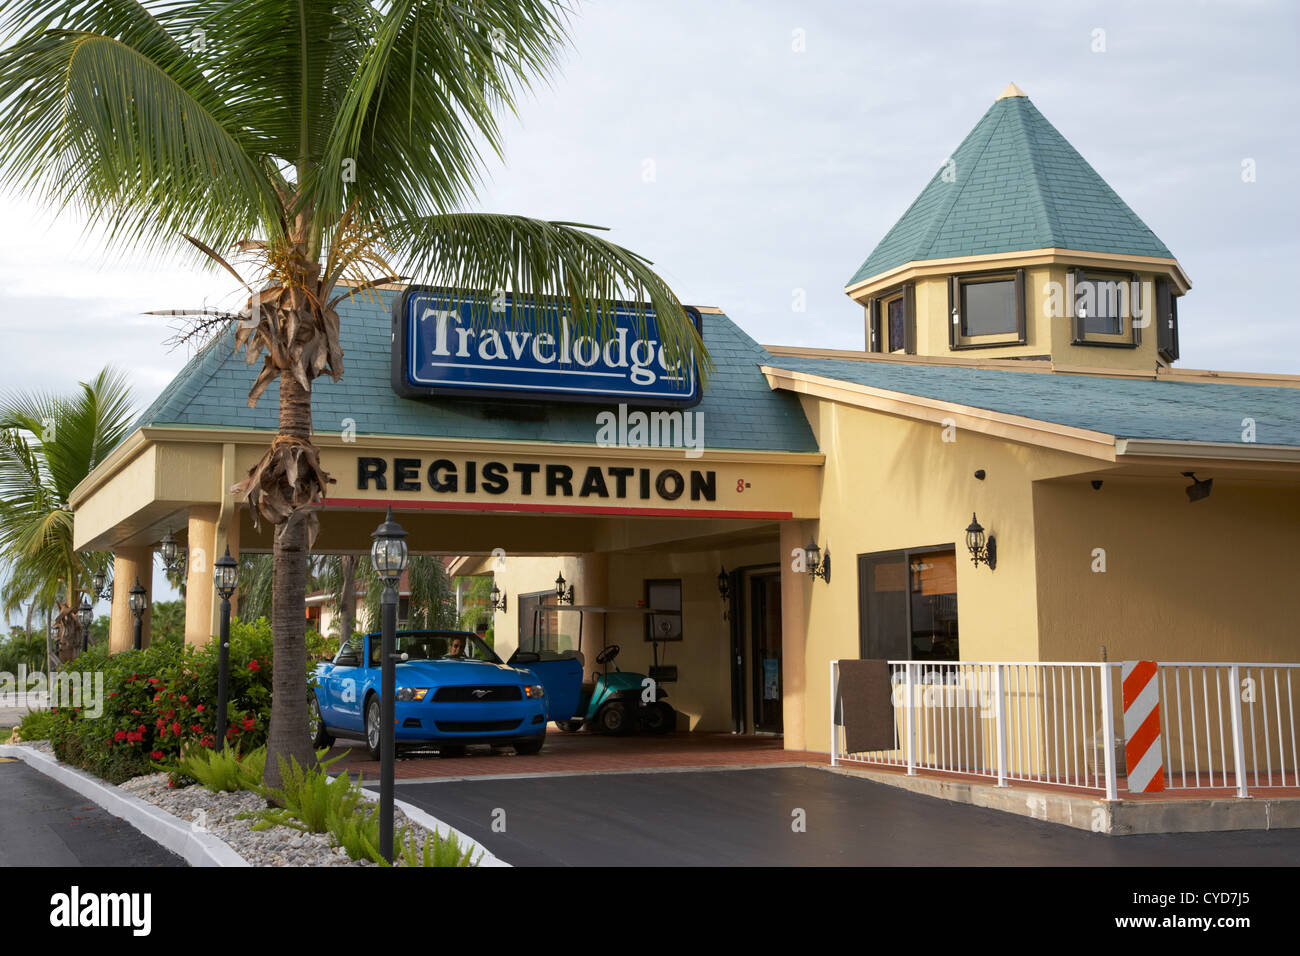 Mietwagen in Travelodge Motel Anmeldebereich homestead Florida City usa Stockfoto